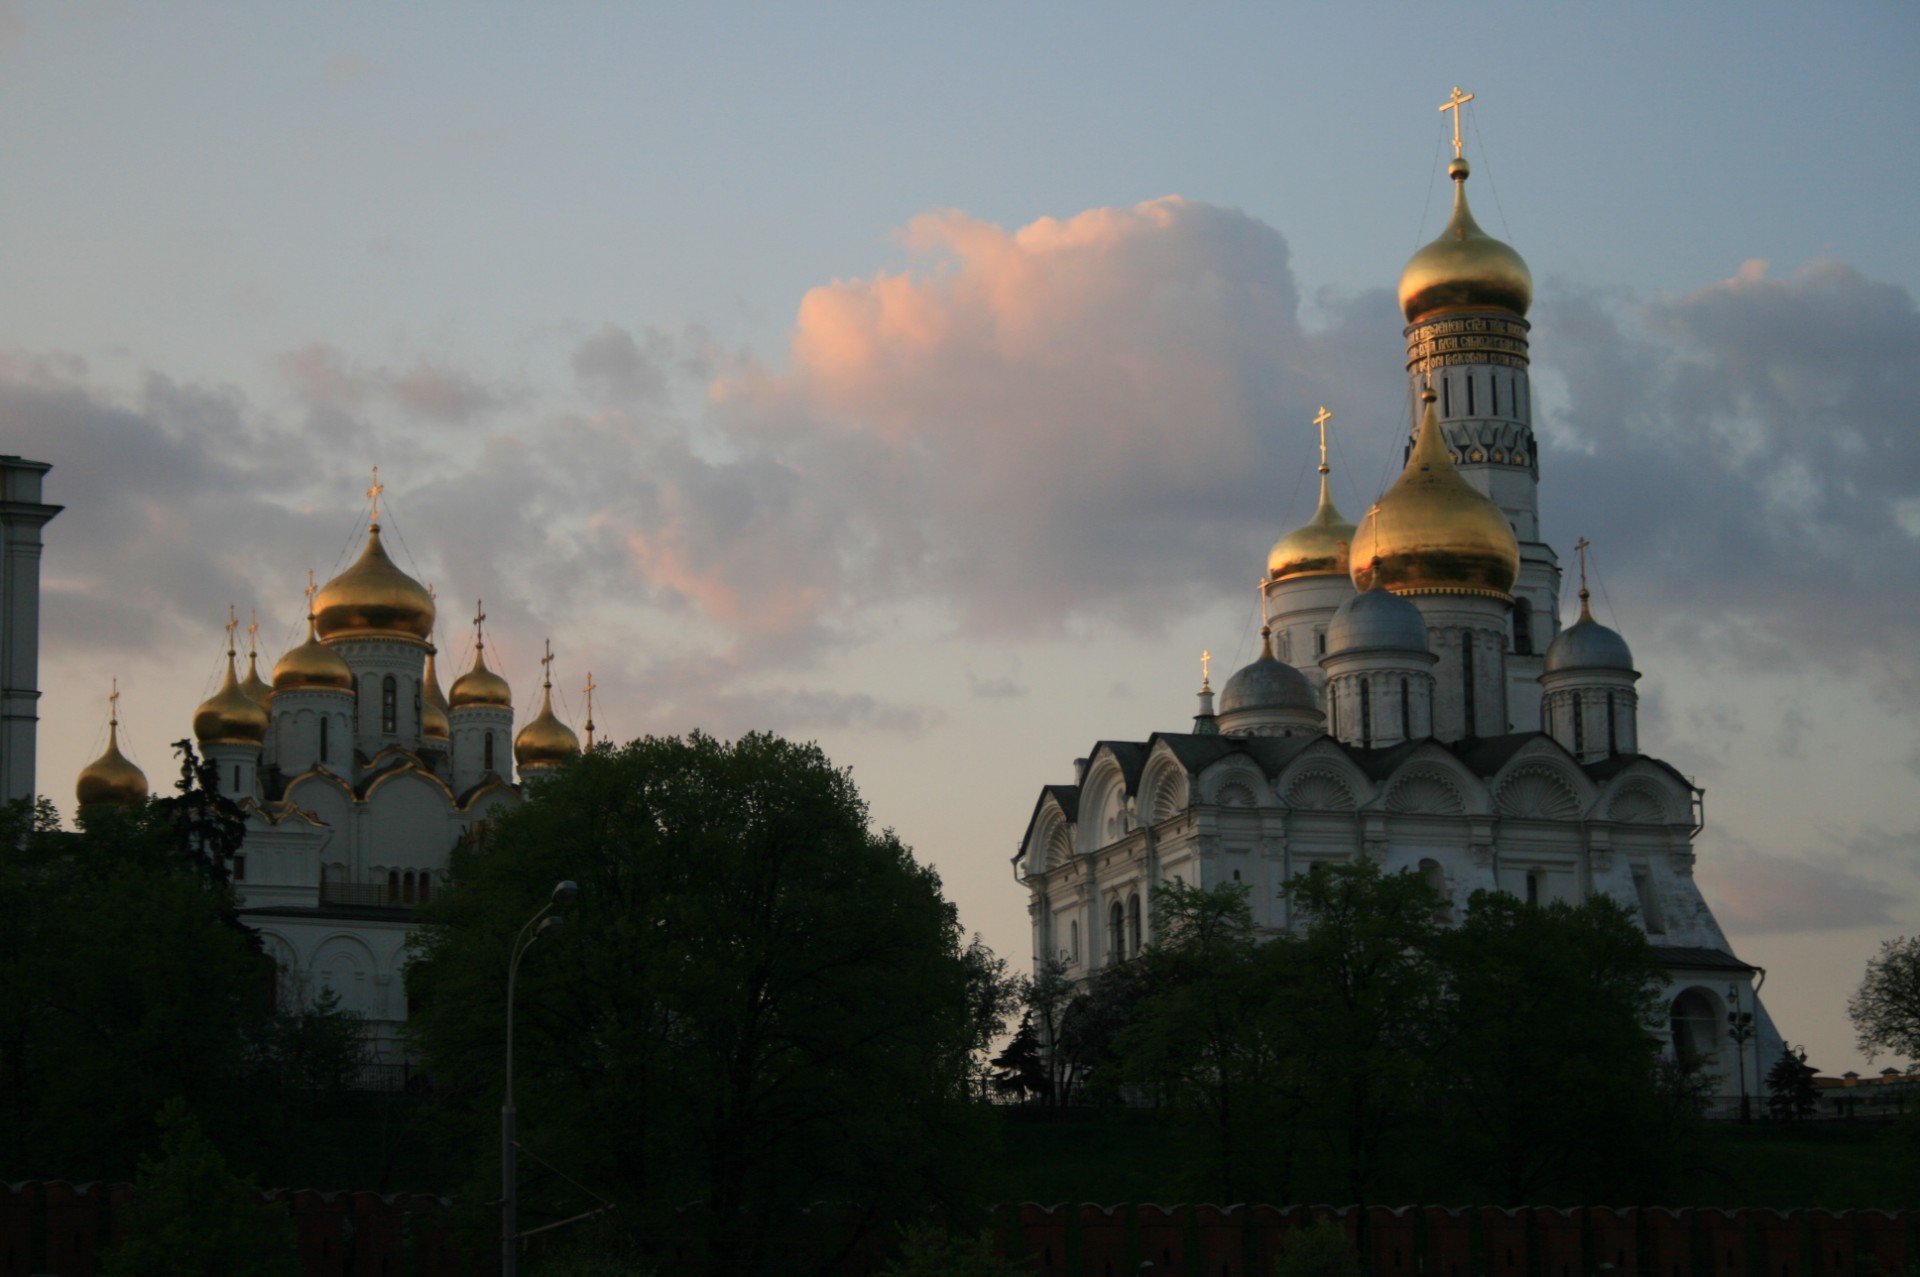 Cúpulas doradas del río Moscú